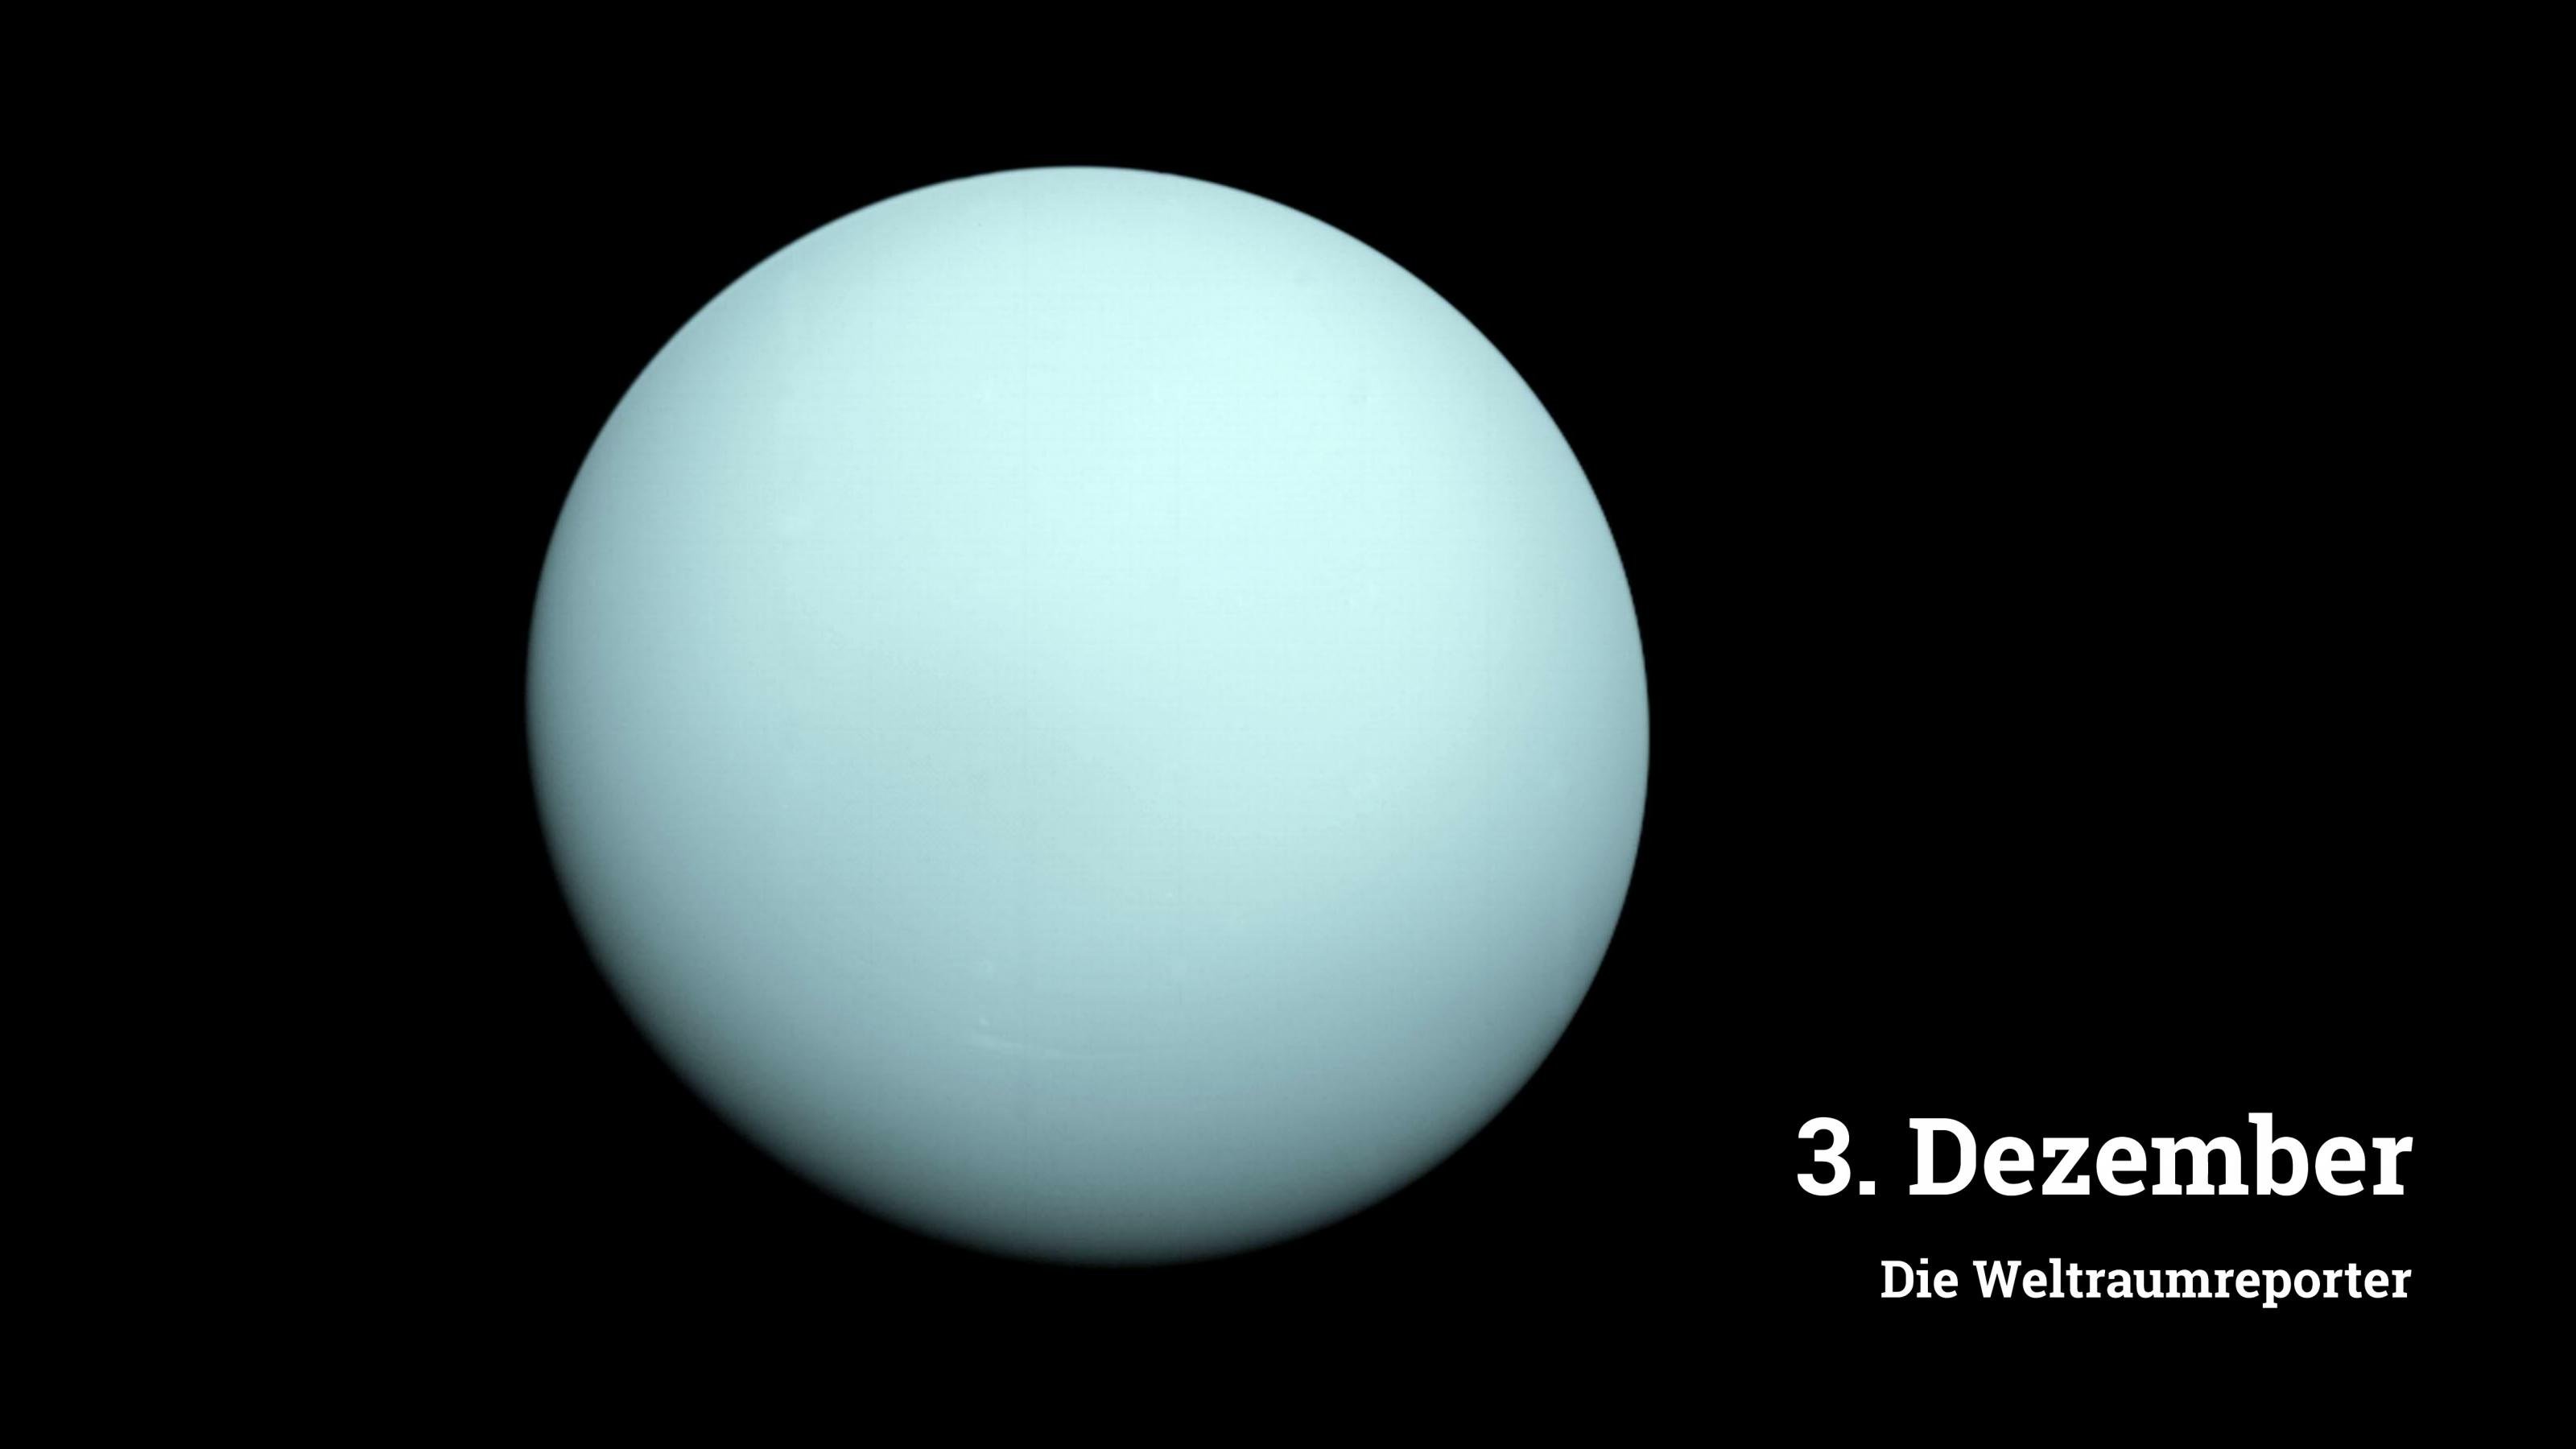 Bläulich-milchige Scheibe des Uranus, aufgenommen mit der Voyager-2-Sonde im Ajhr 1986.